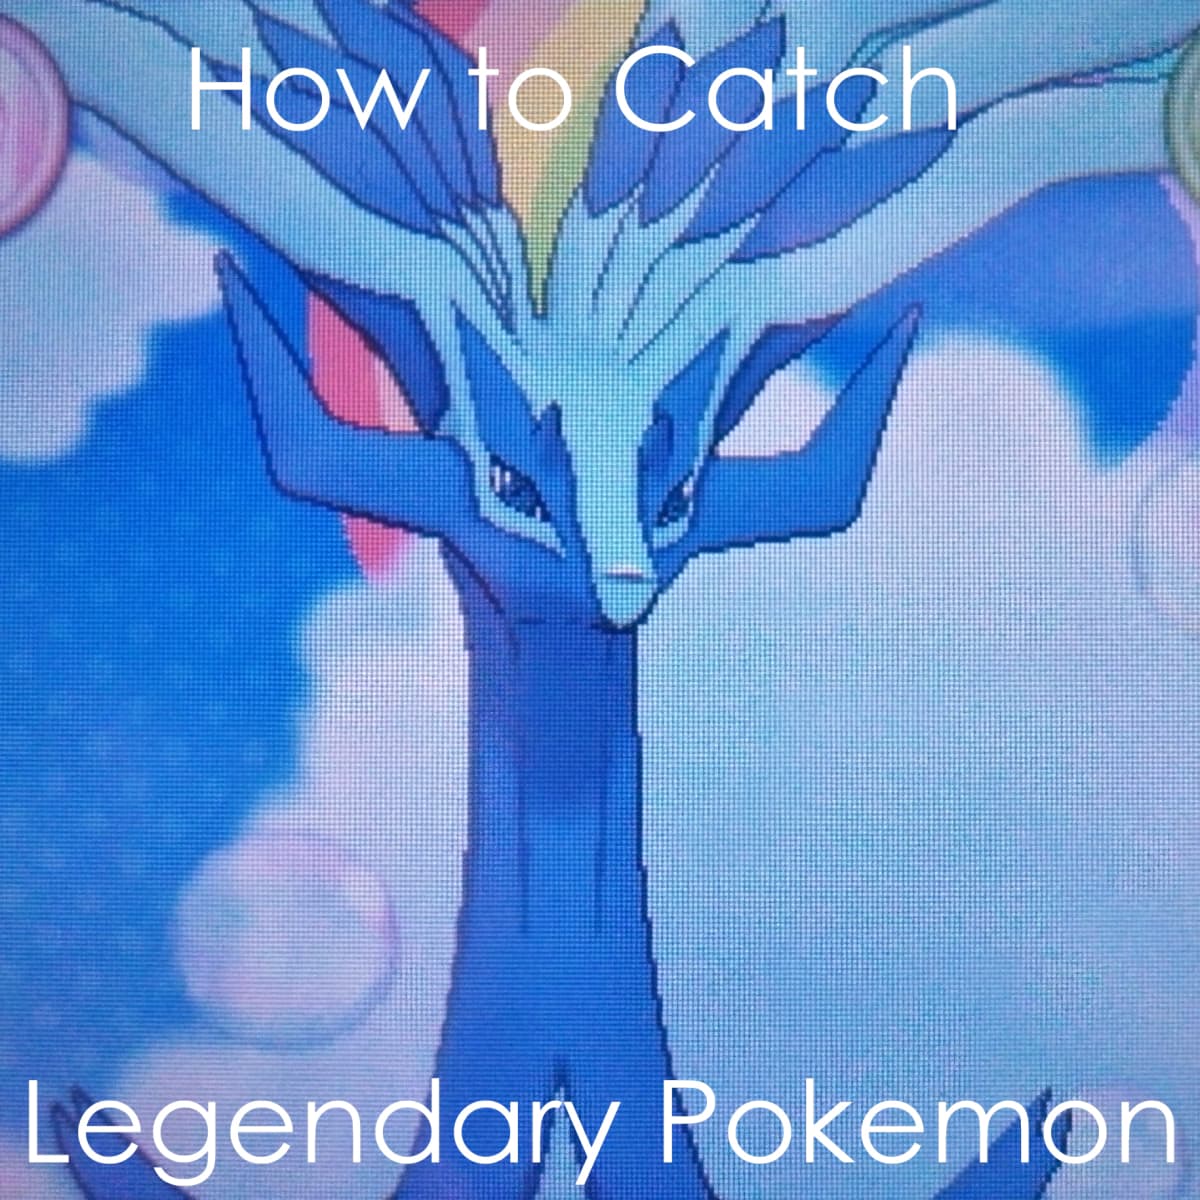 Ten Tips for Catching Legendary Pokémon